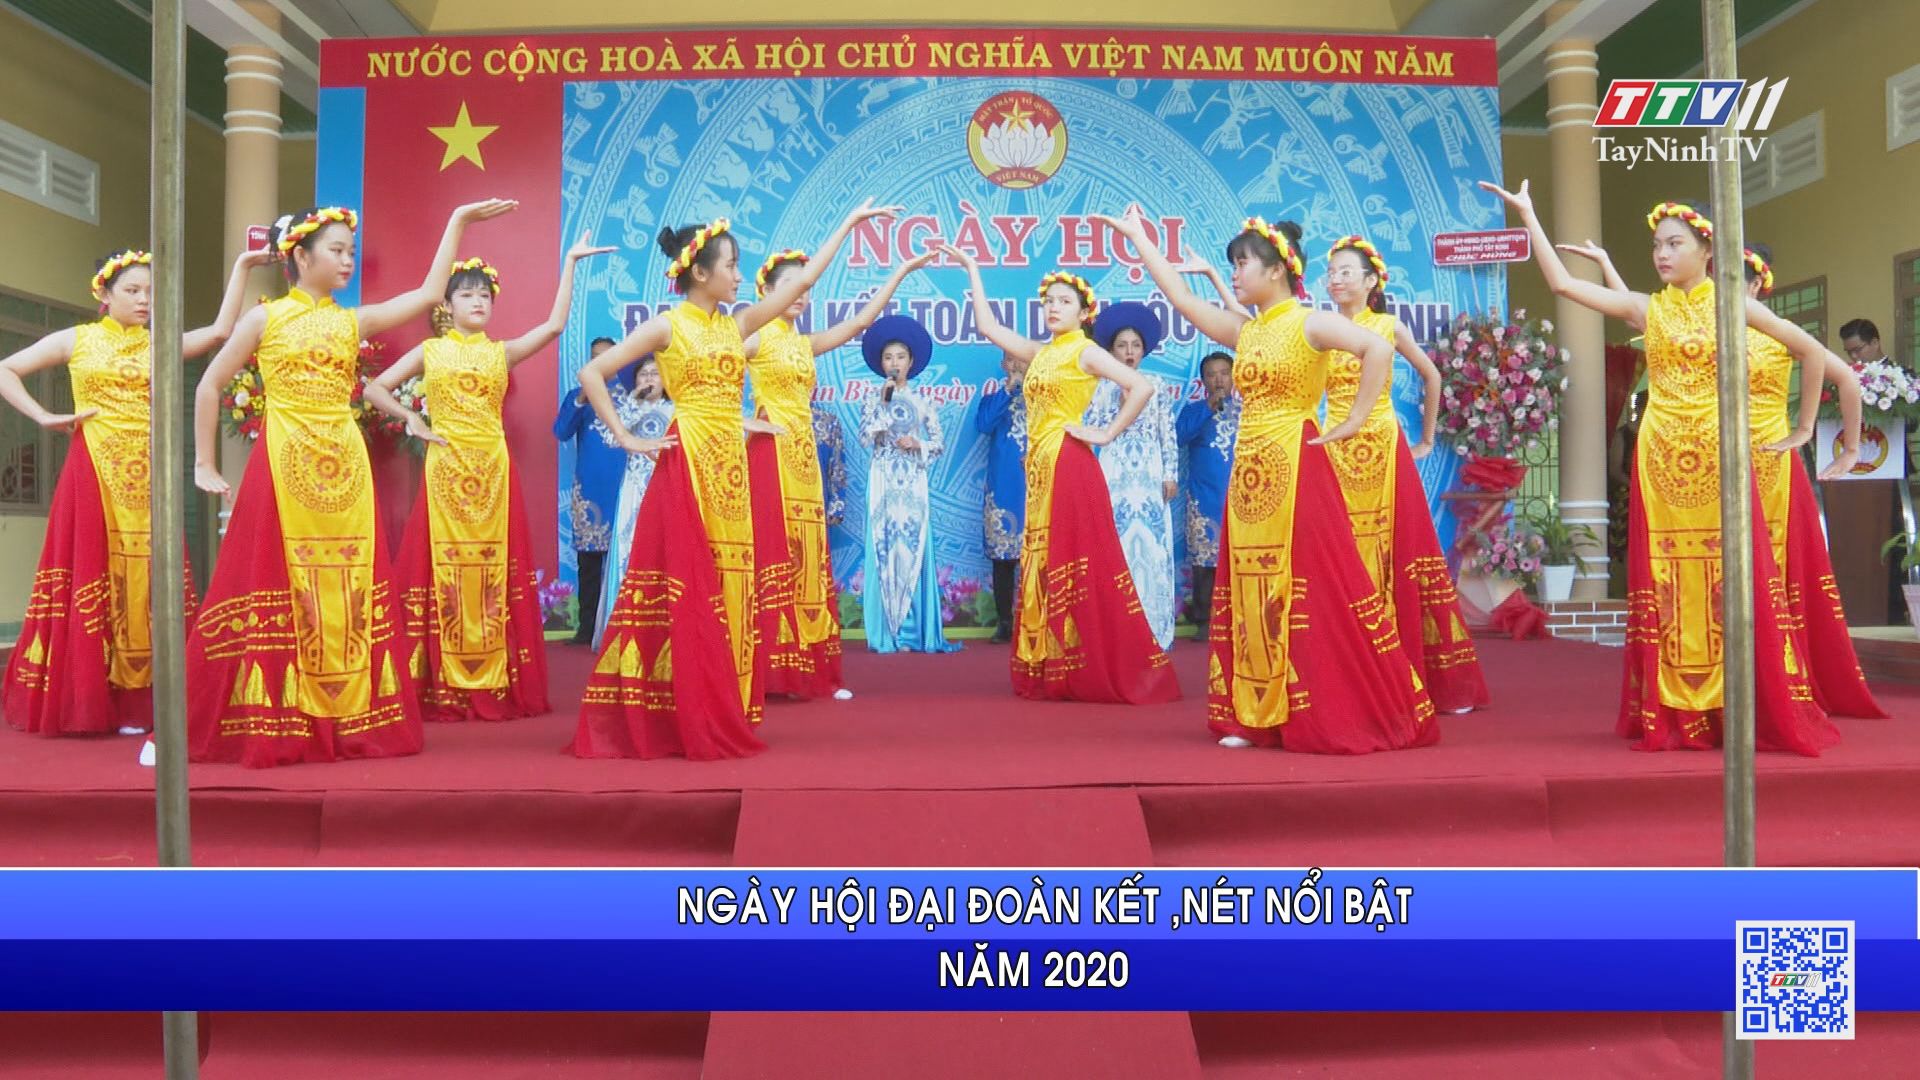 Ngày hội đại đoàn kết, nét nổi bật năm 2020 | ĐẠI ĐOÀN KẾT TOÀN DÂN | TayNinhTV